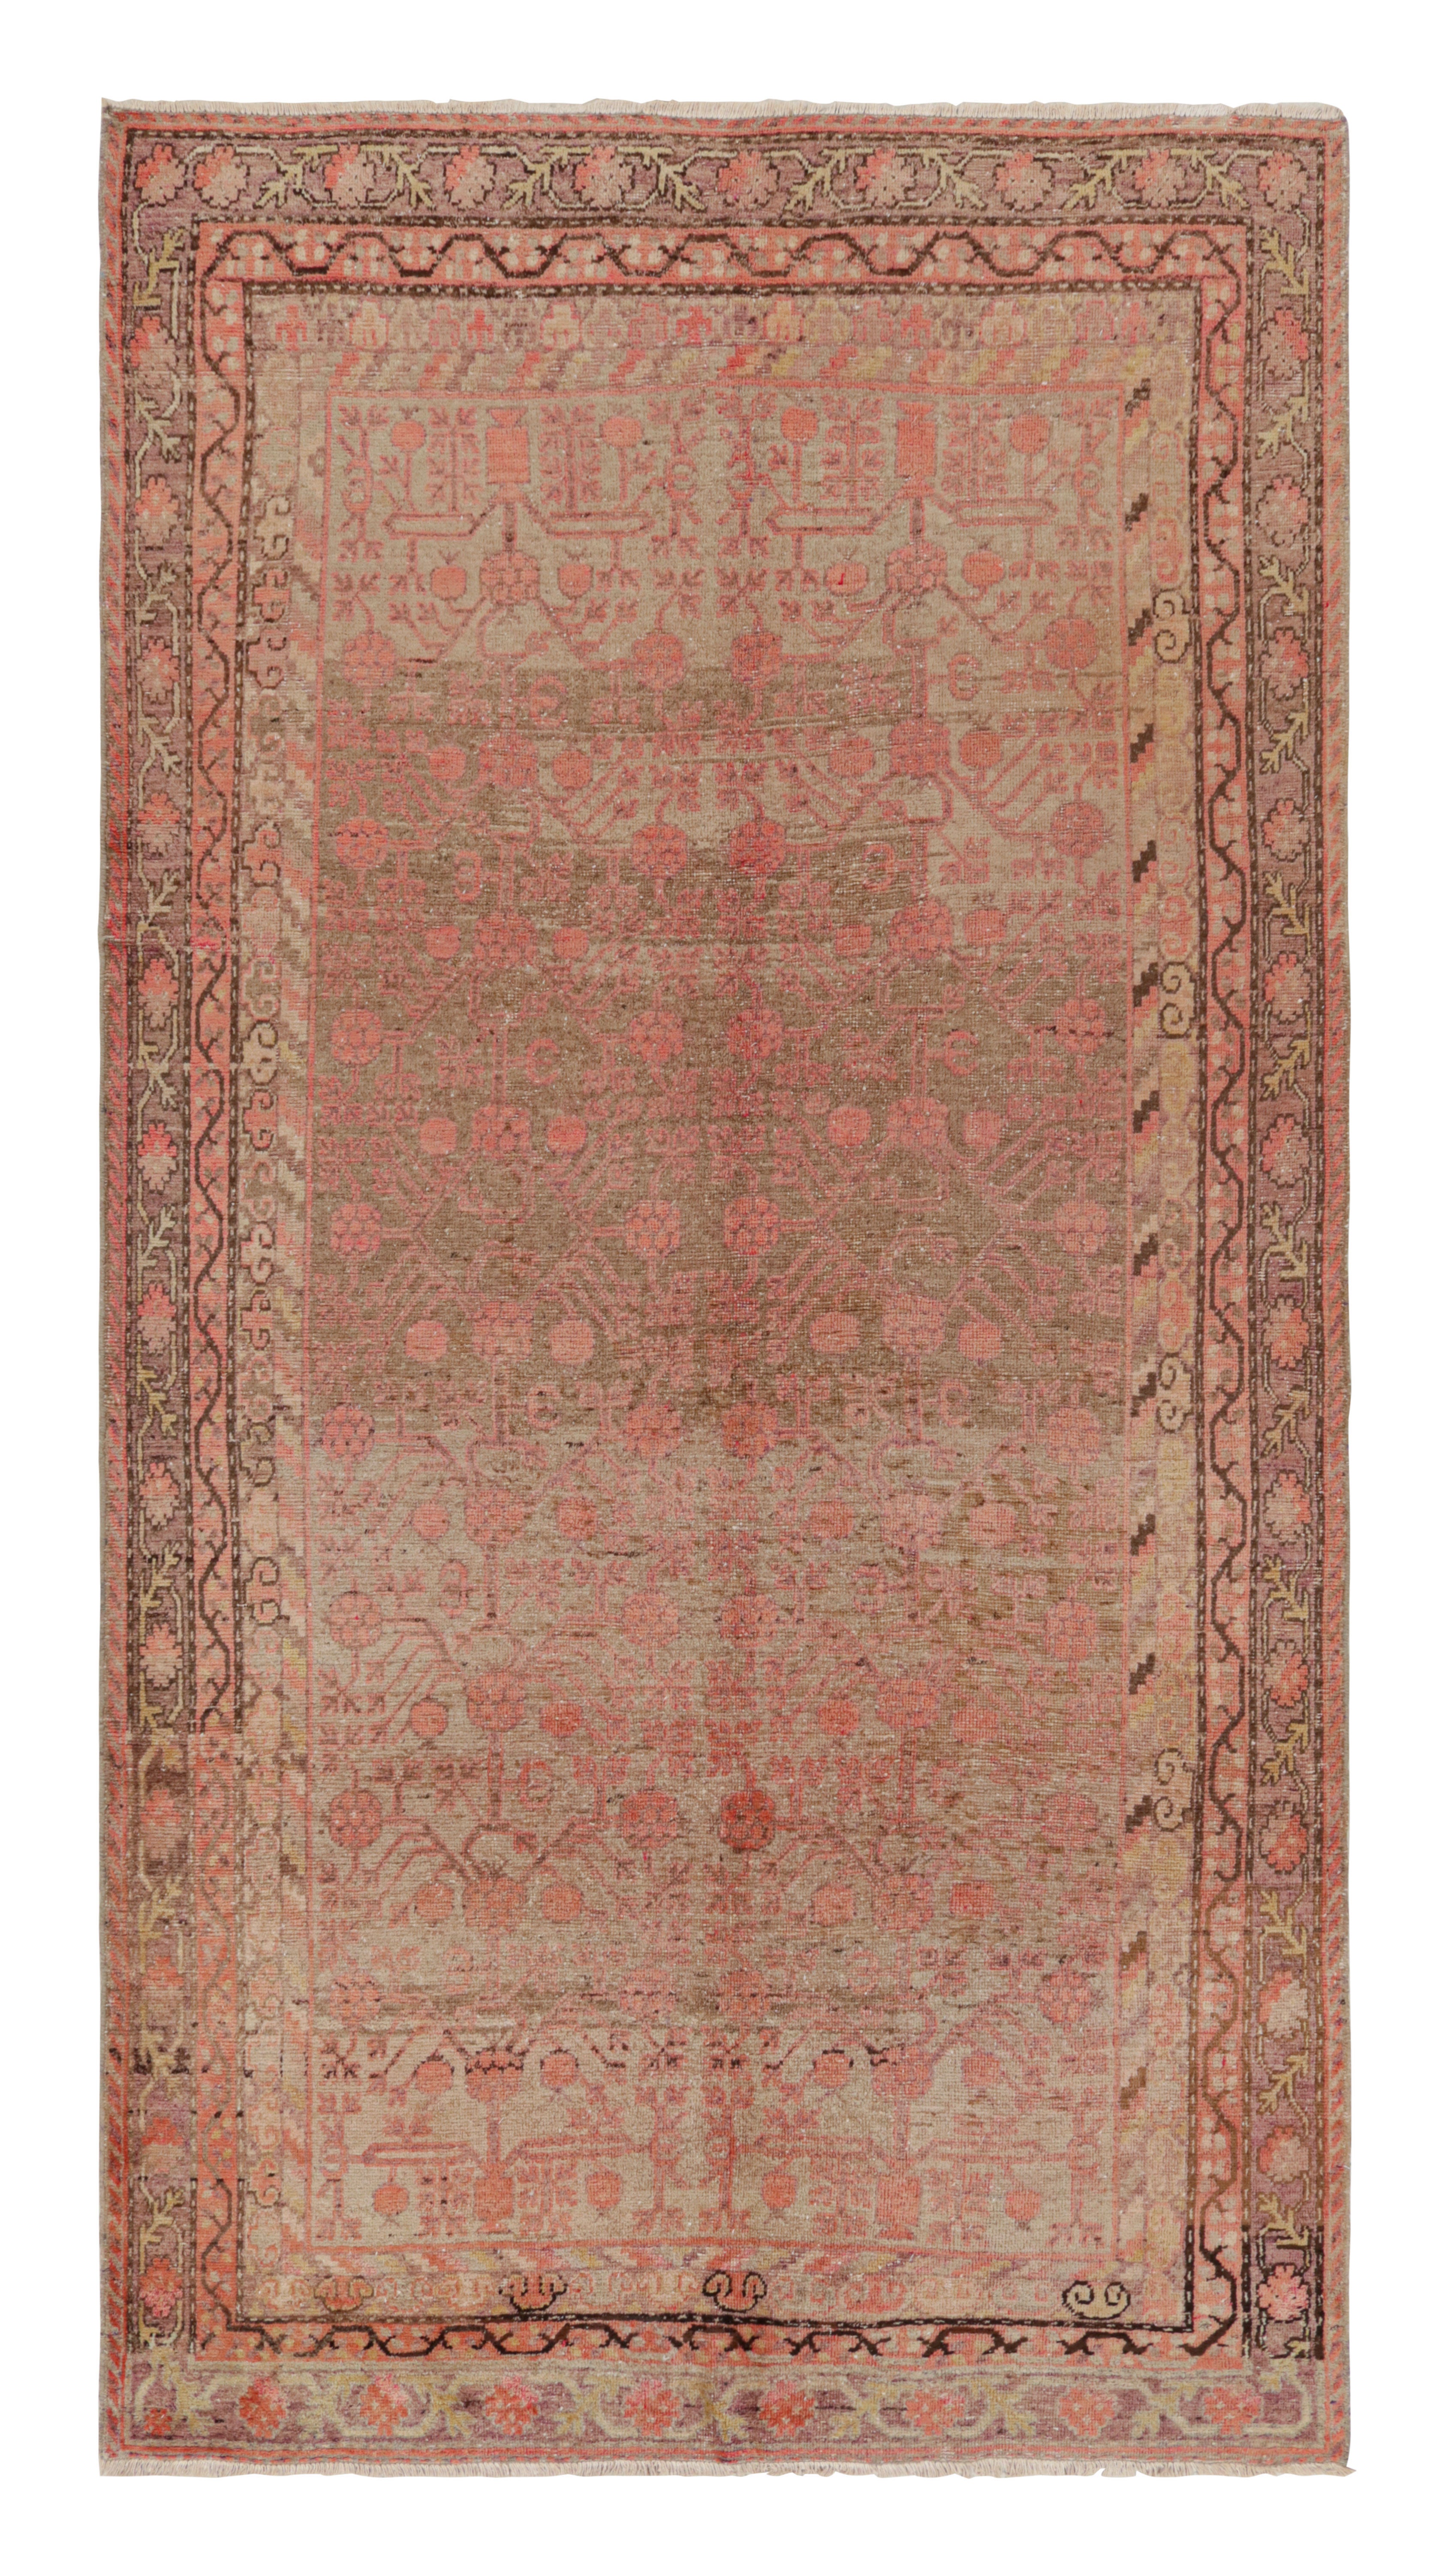 Tapis Khotan transitionnel en laine rose et beige mi-siècle par Rug & Kilim